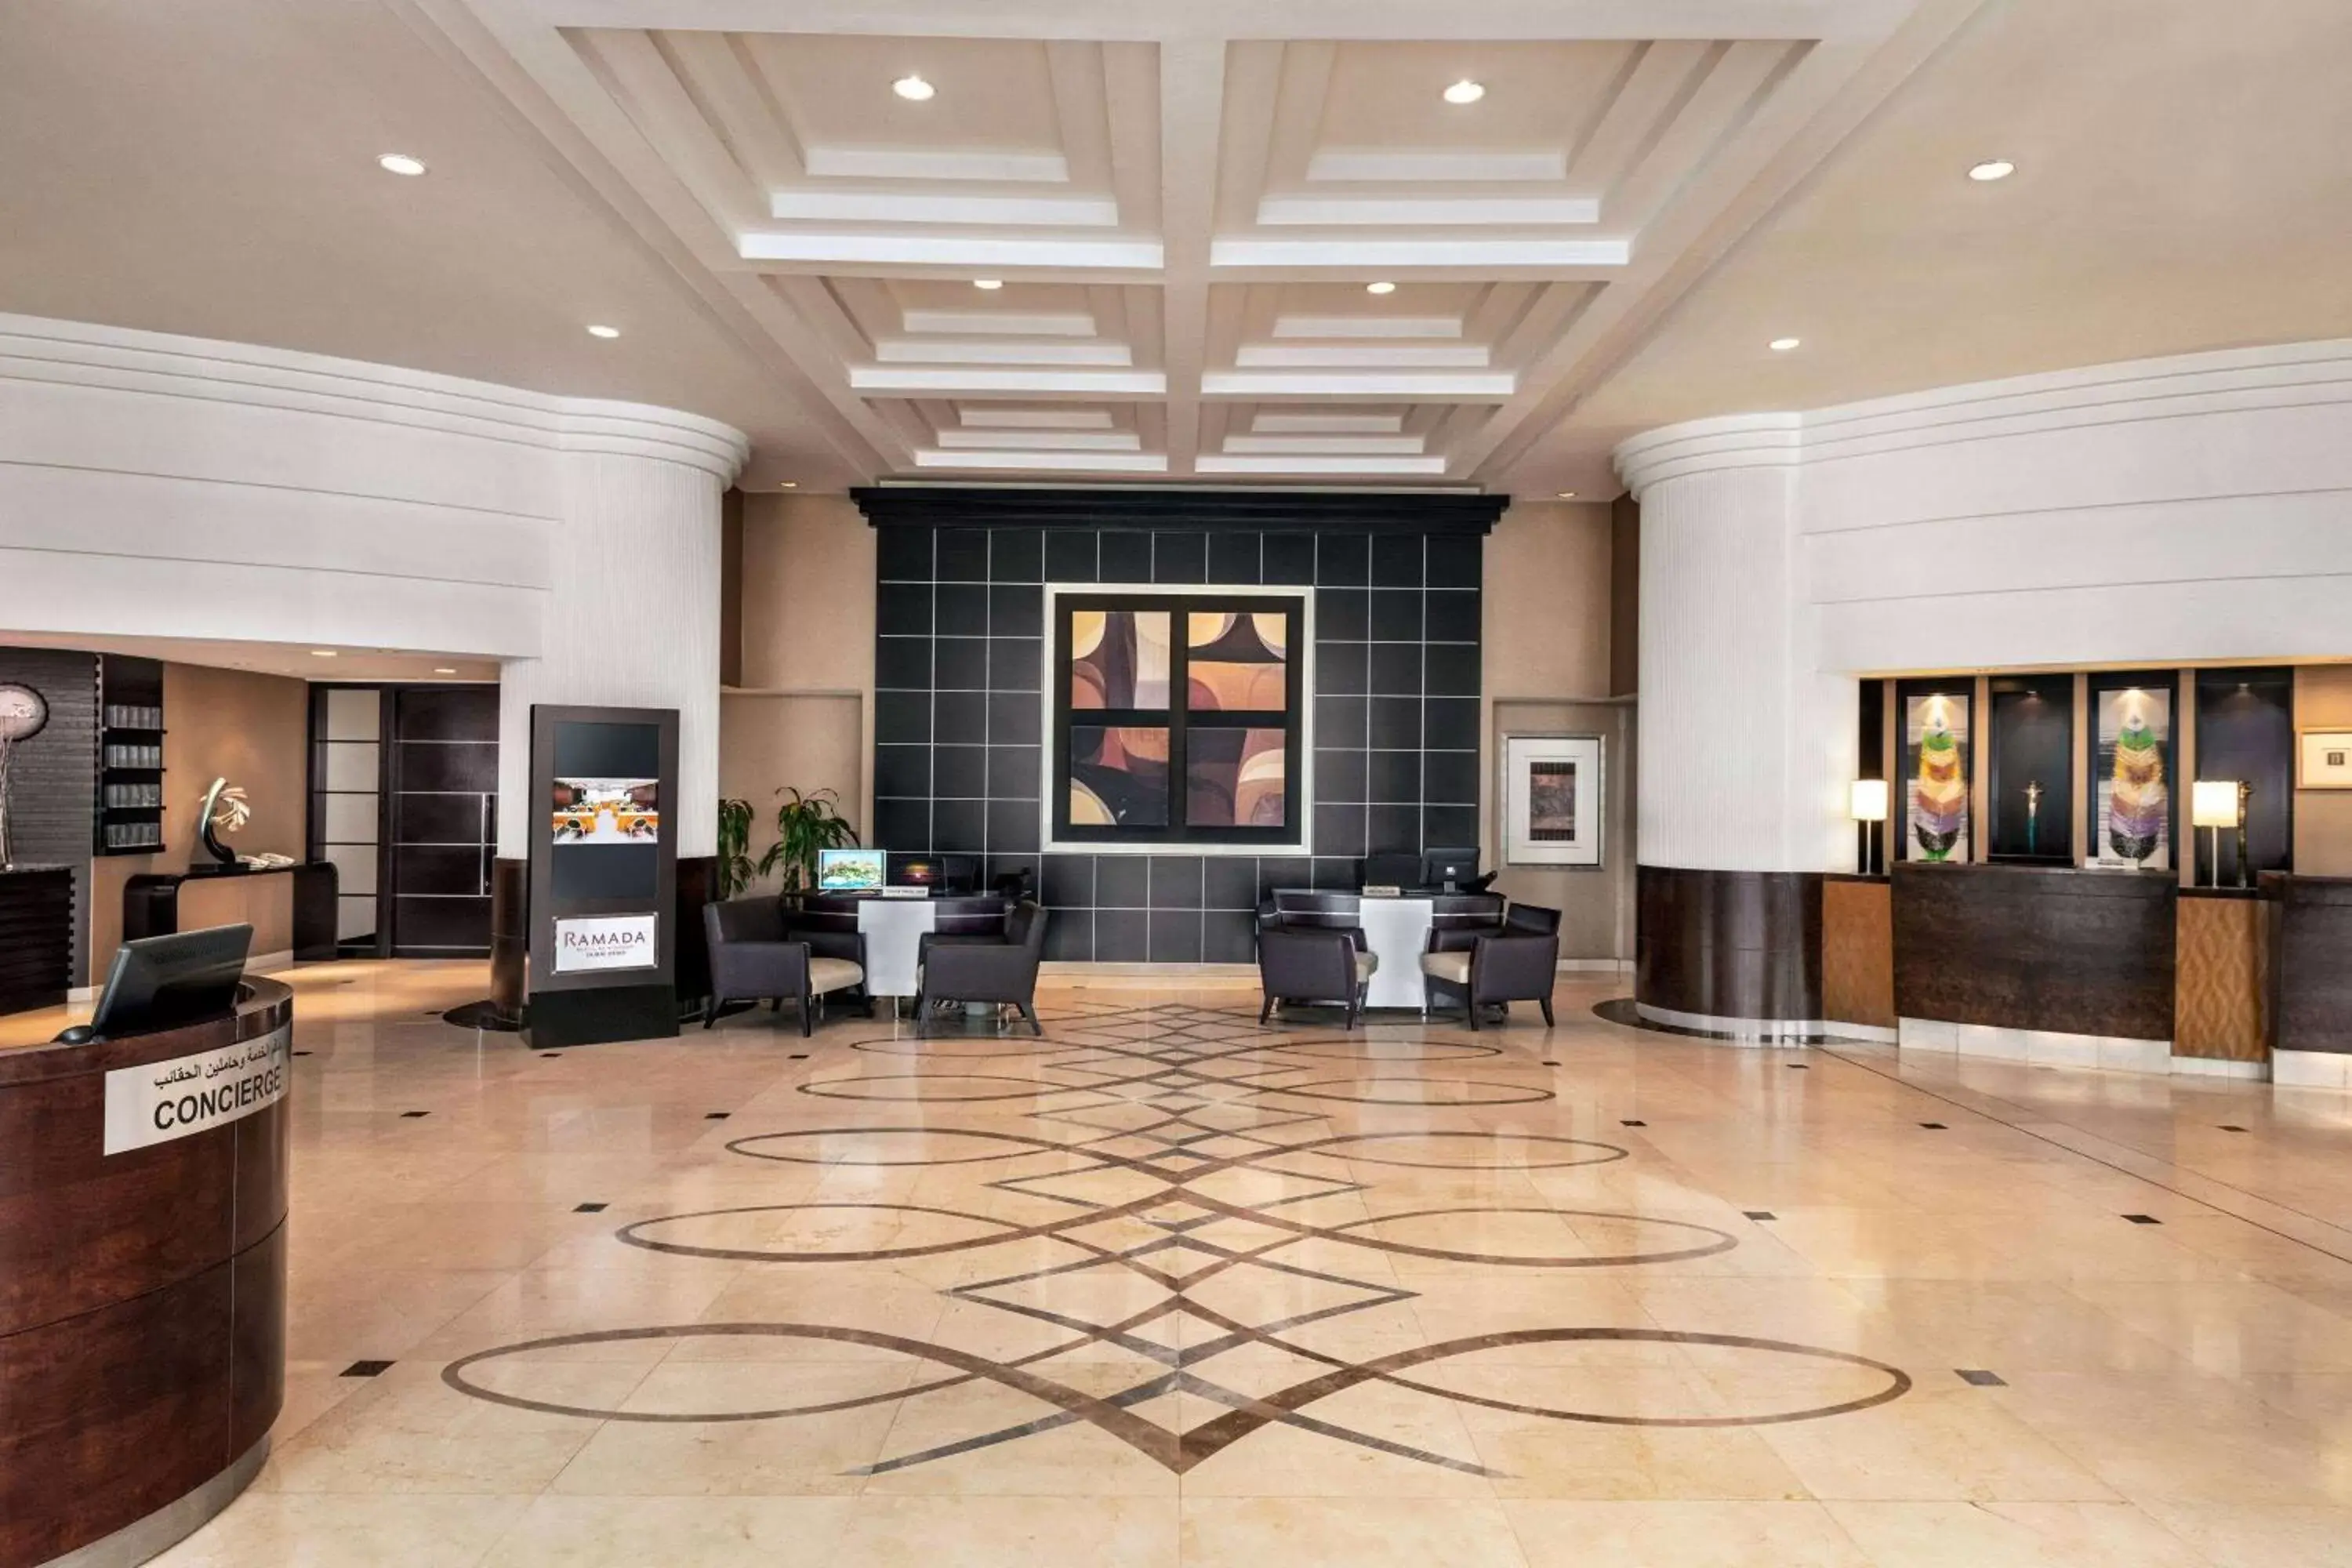 Lobby or reception, Lobby/Reception in Ramada Plaza by Wyndham Dubai Deira